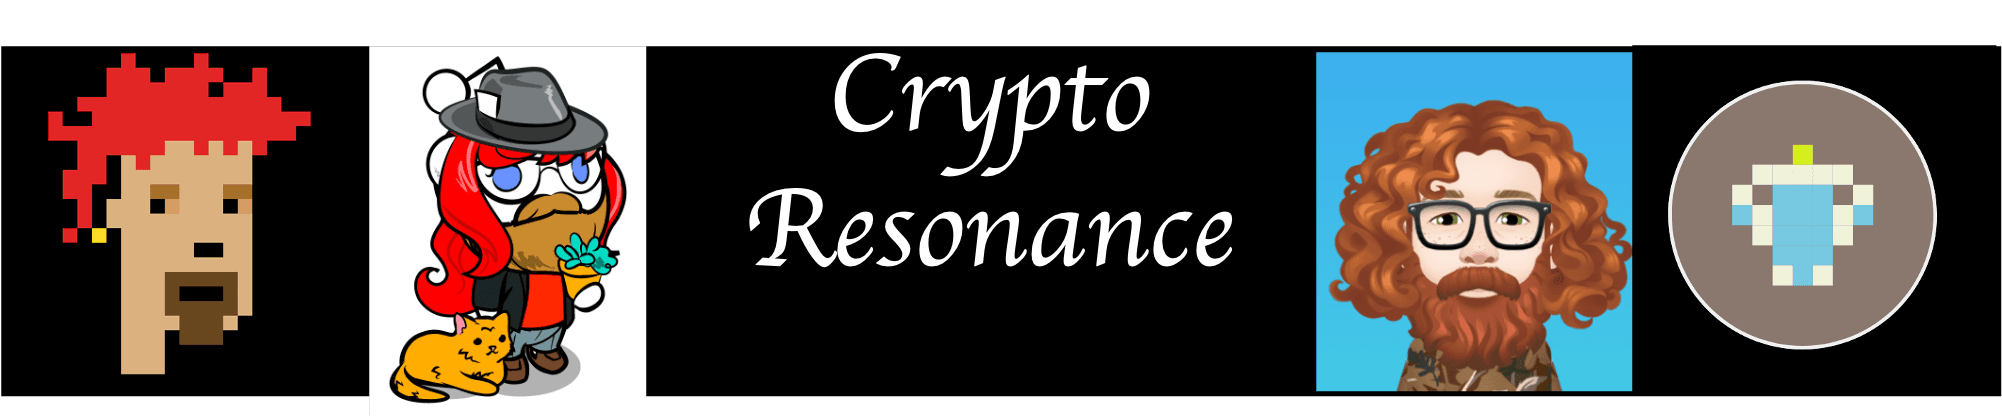 CryptoResonance banner